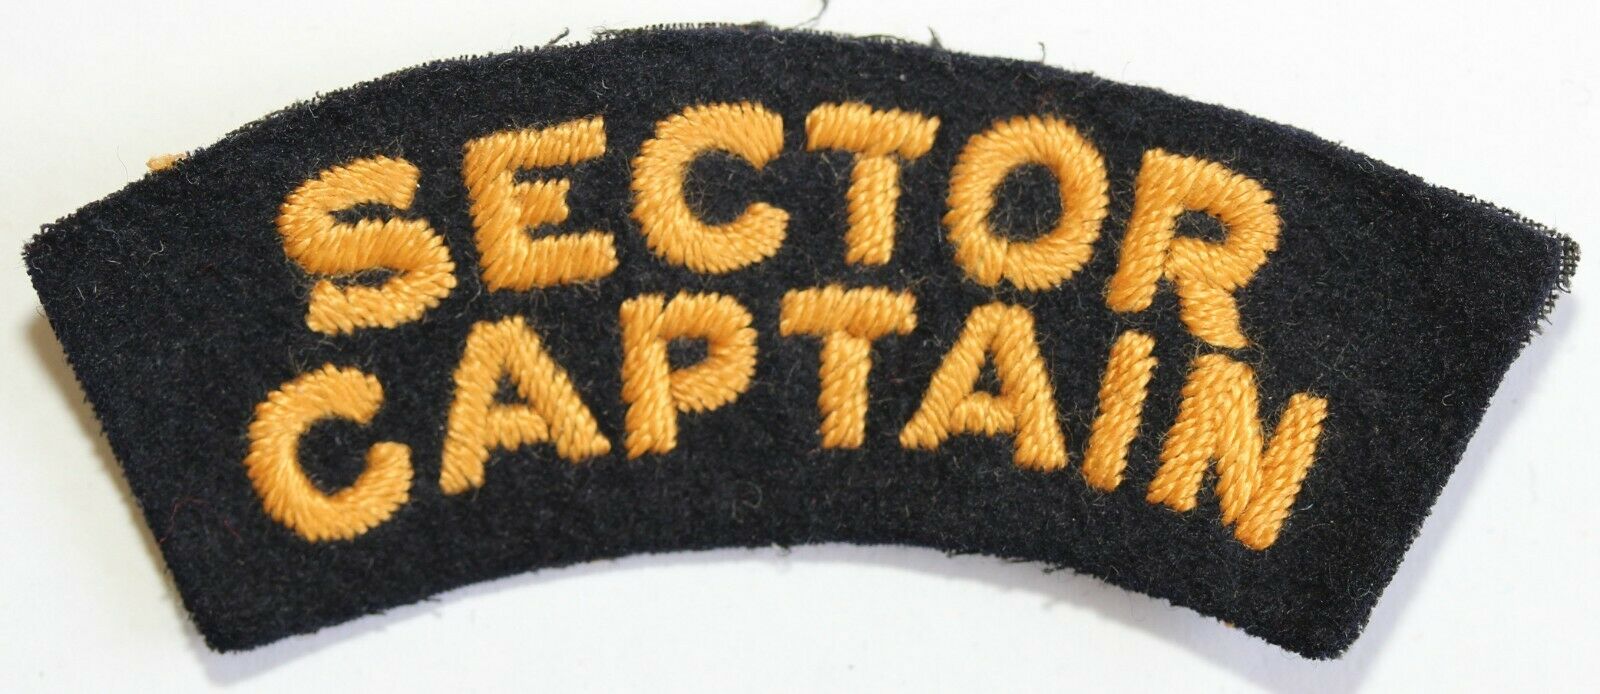 Sector Captain - Fire Guard shoulder title